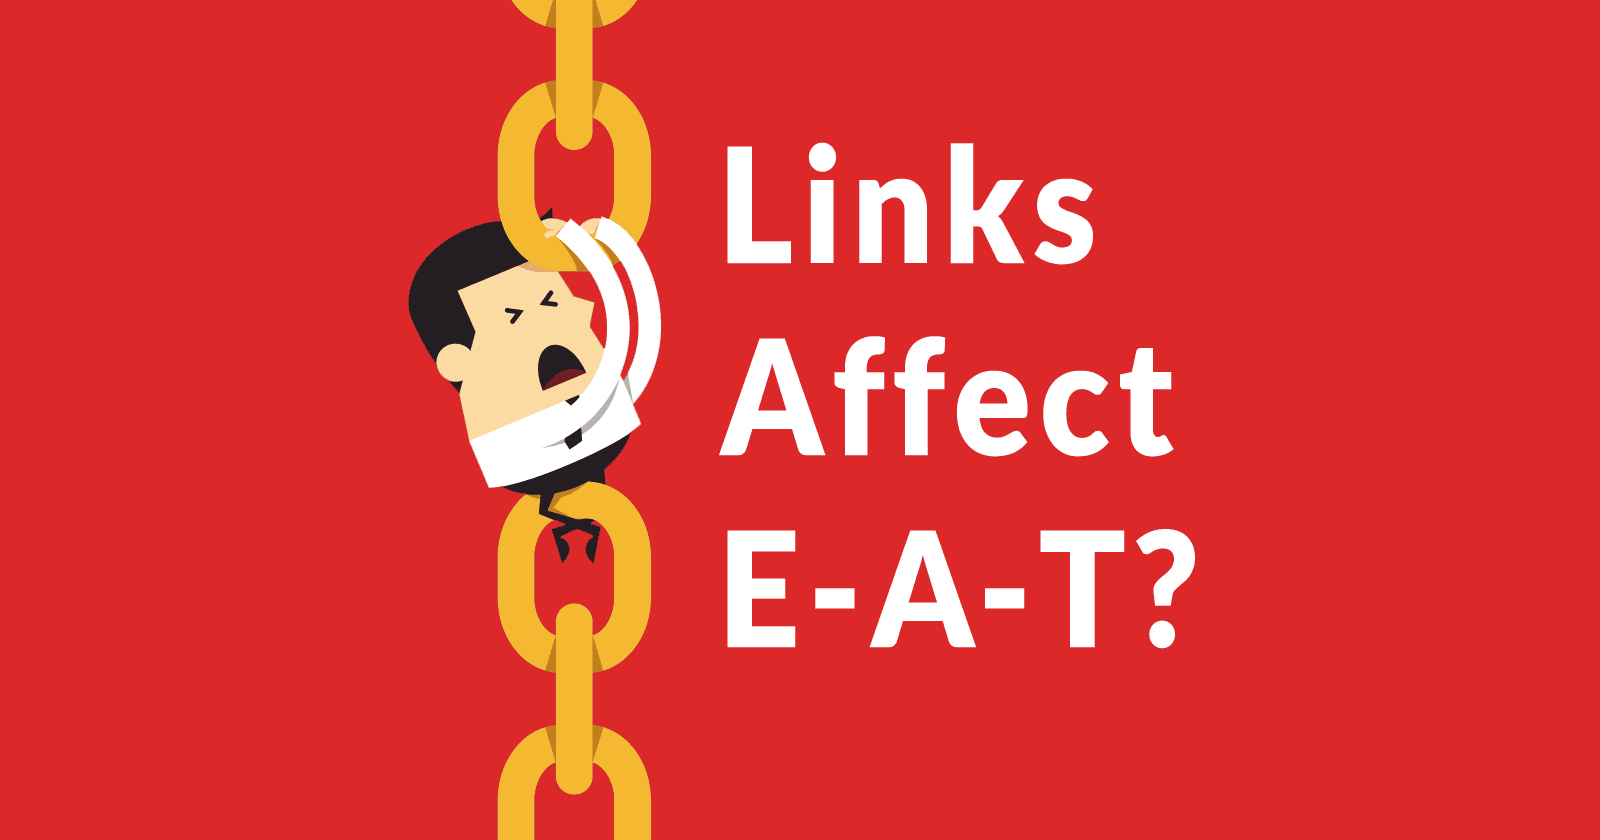 Links Affect E-A-T for Google SEO?